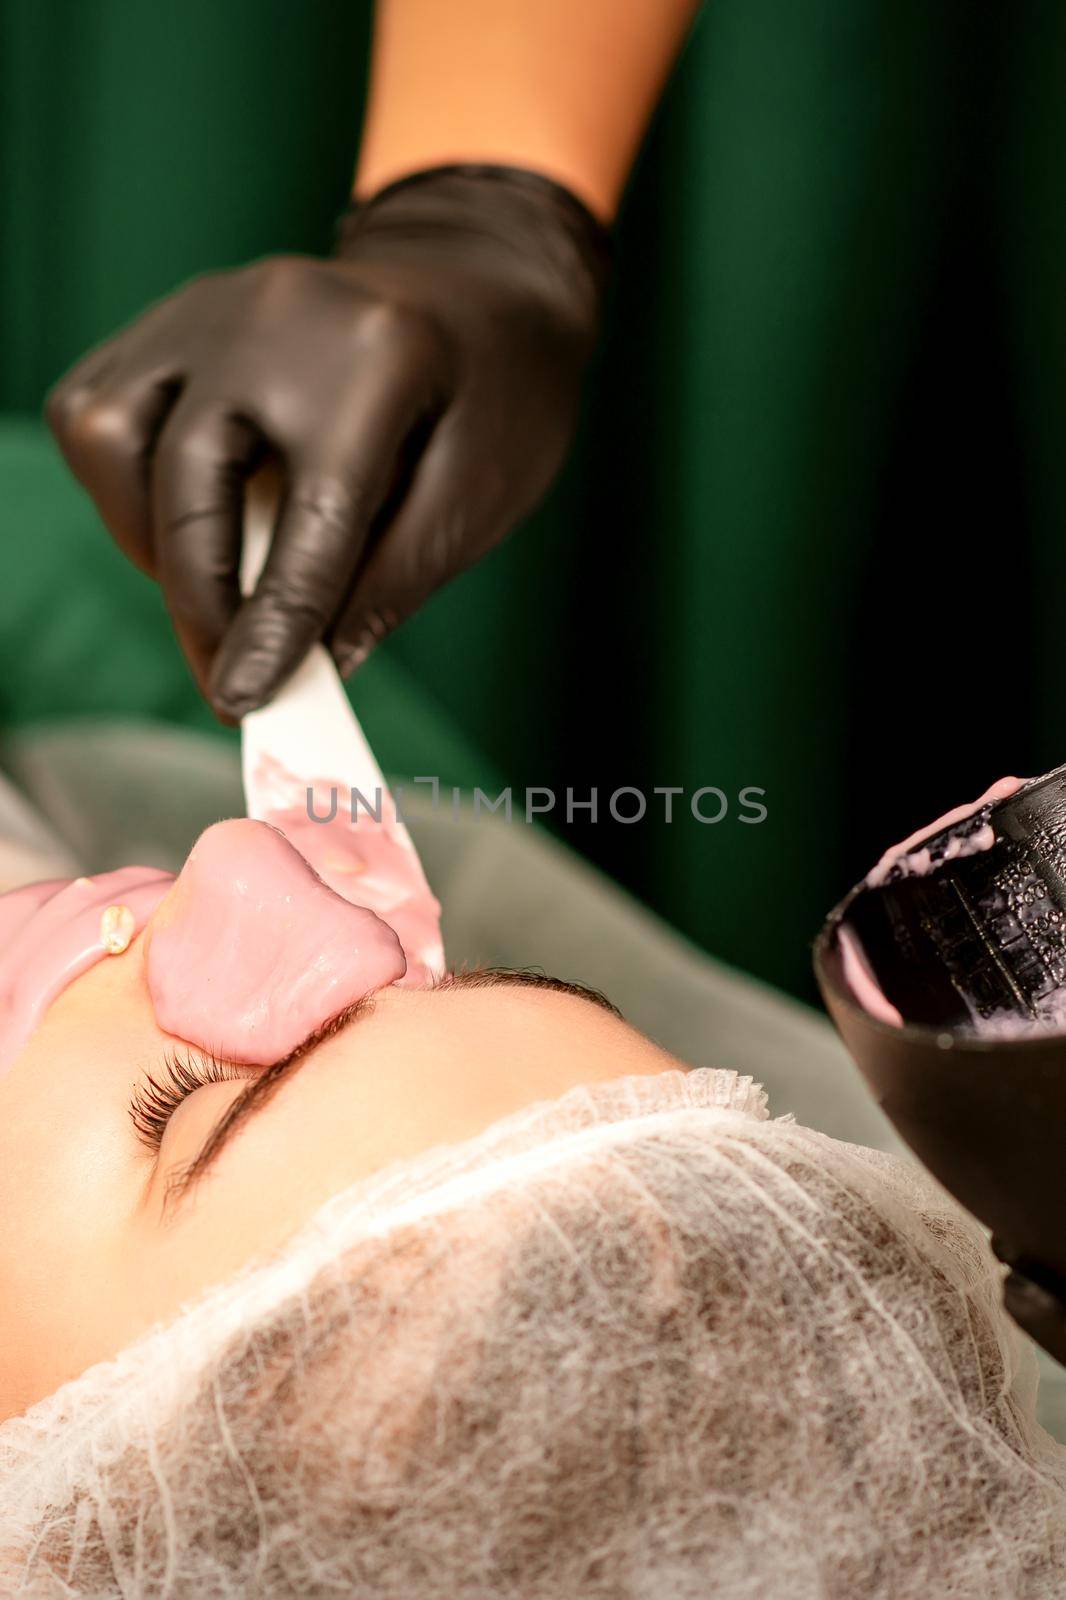 Beautiful young caucasian woman receiving an alginic mask to the face in beauty salon. Facial skin treatment. by okskukuruza